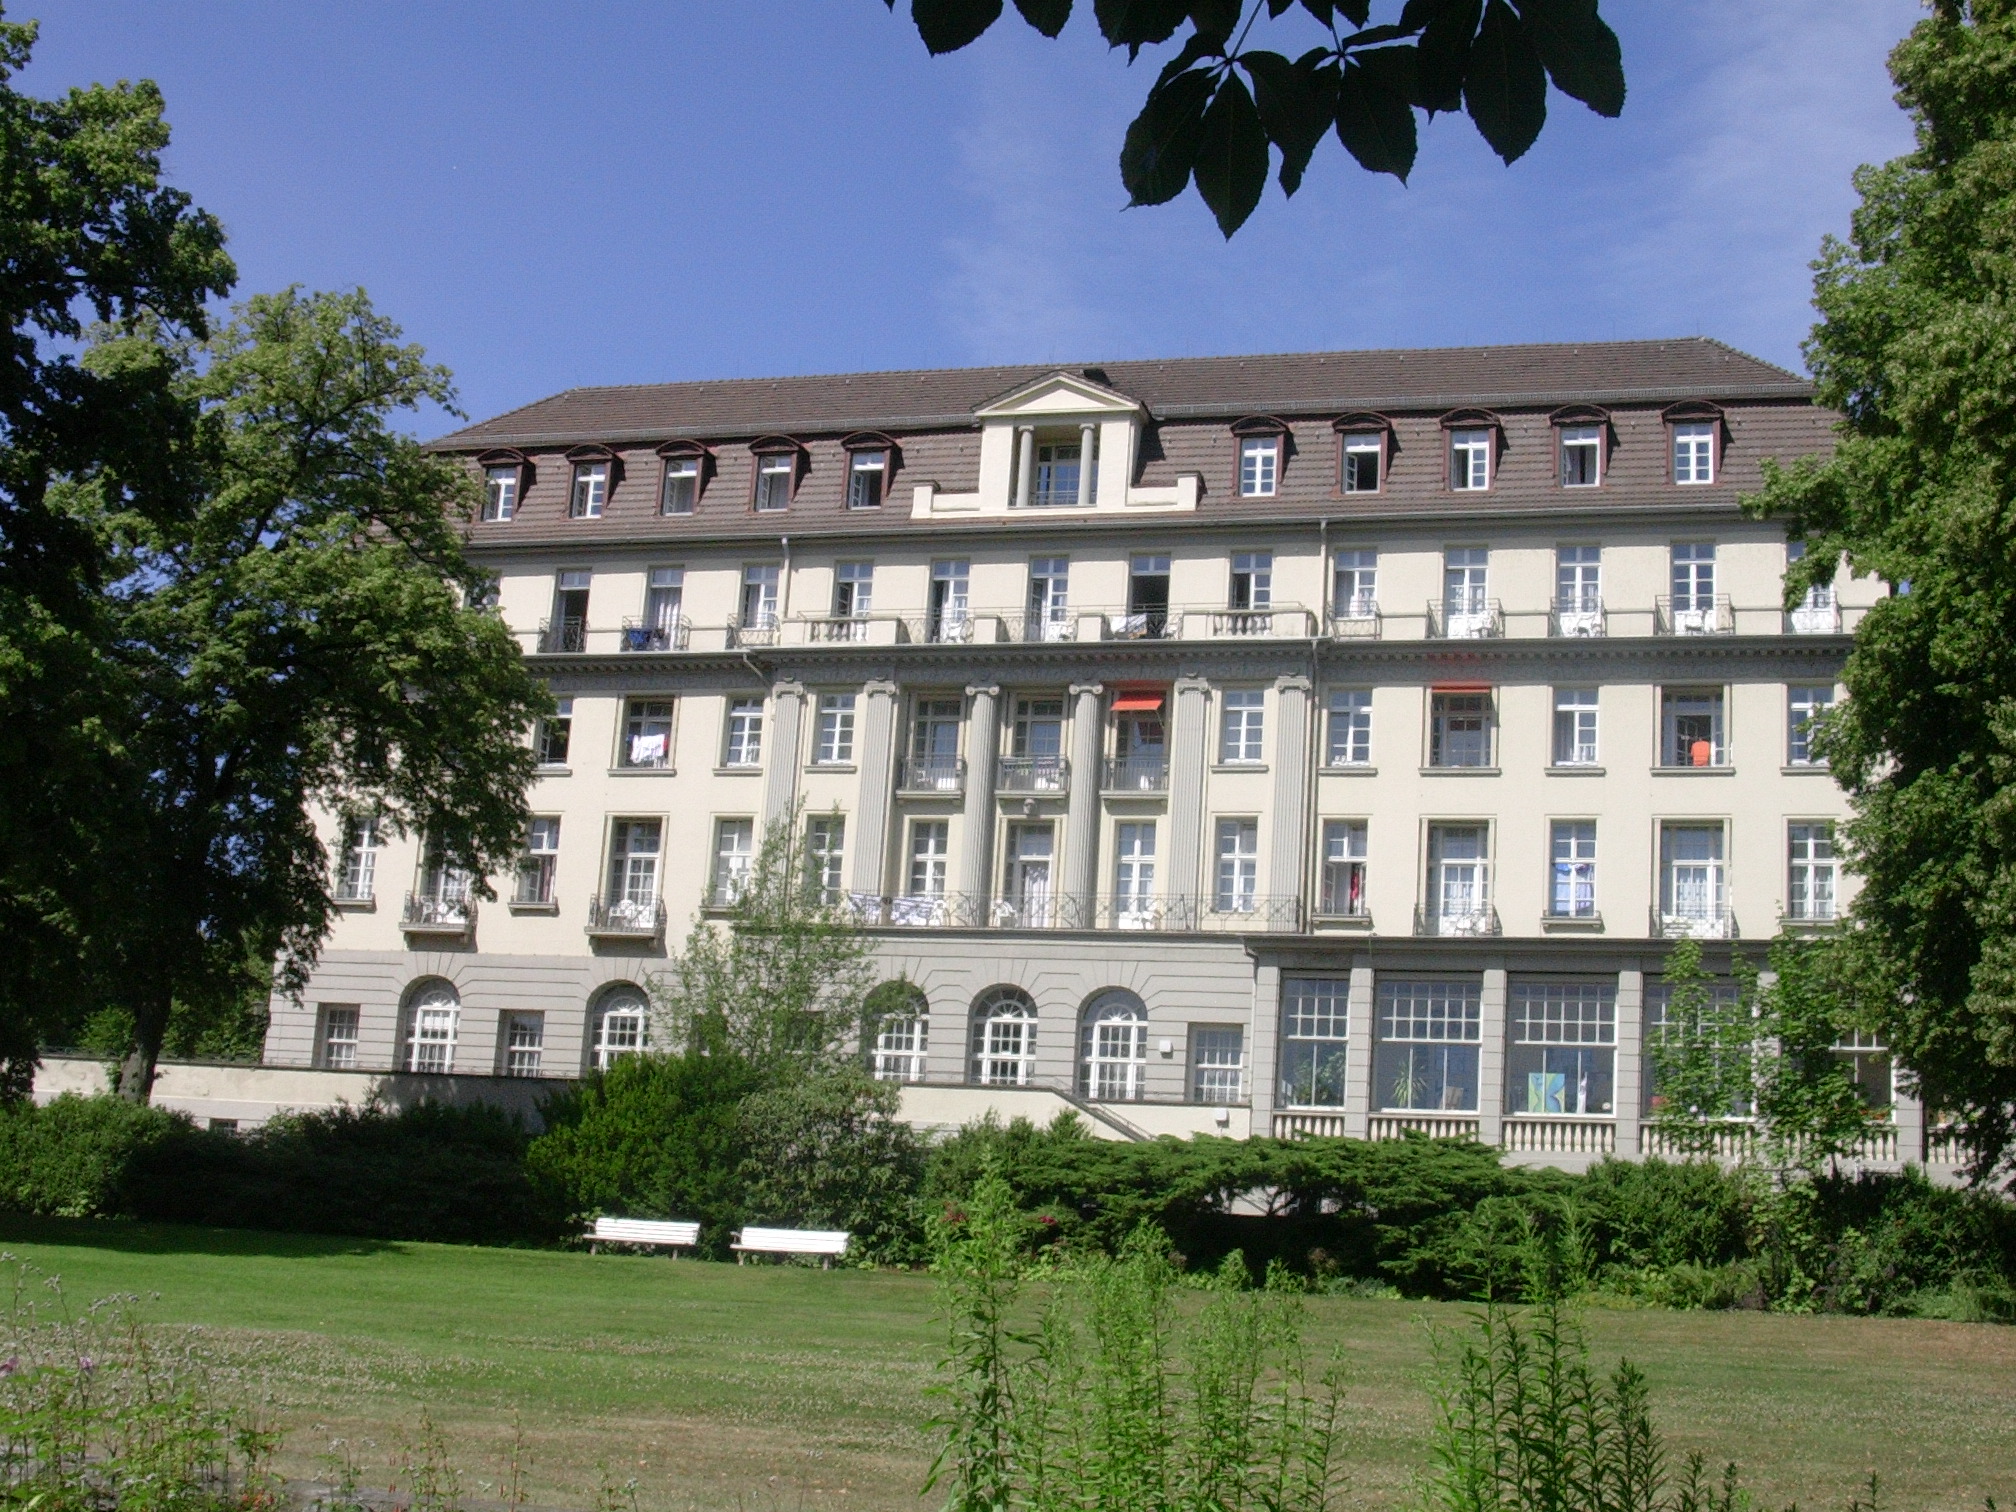 Hotel Fürstenhof 